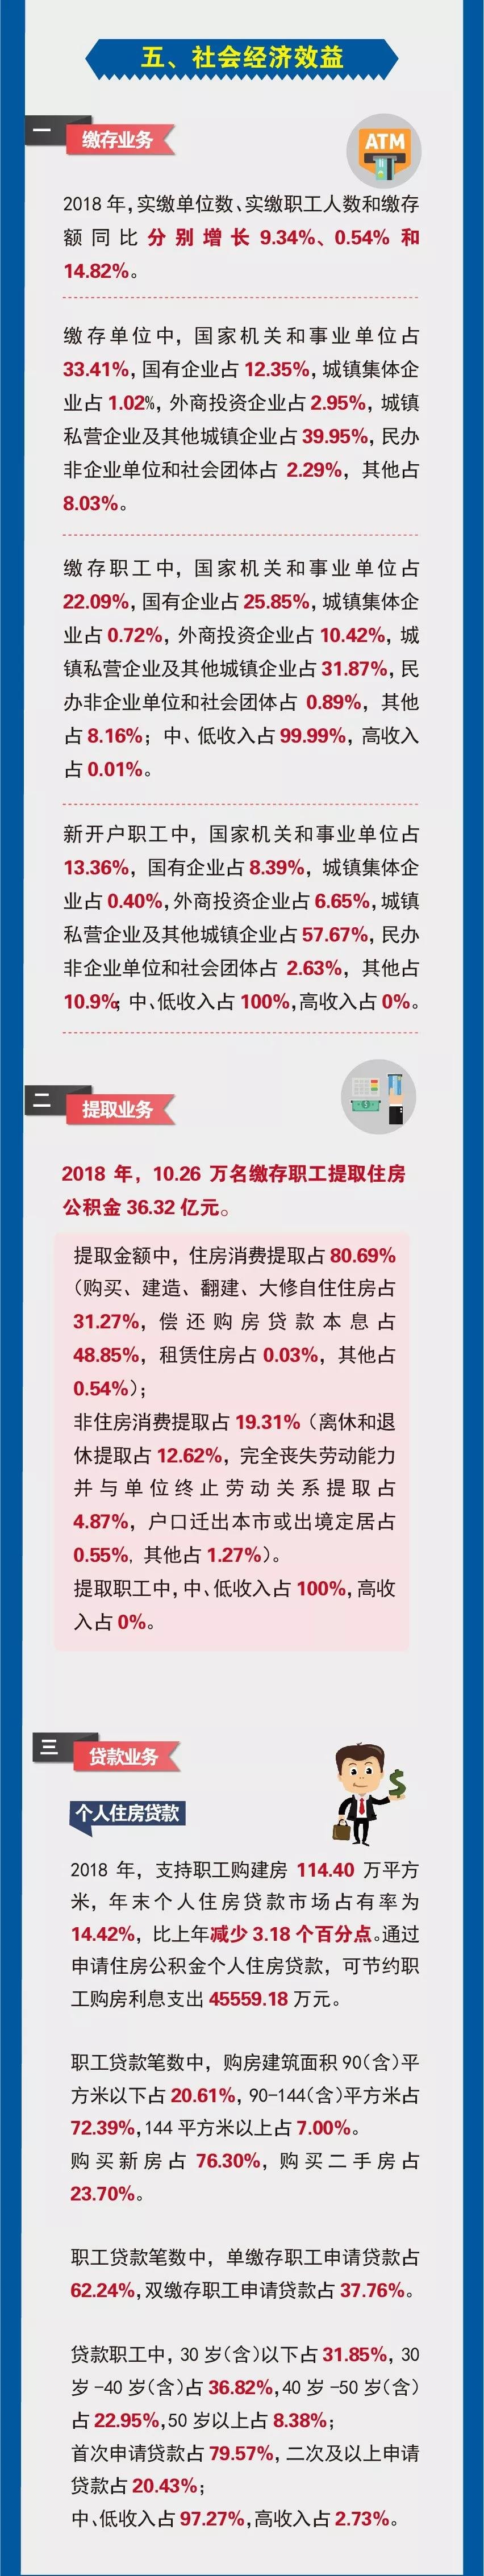 芜湖市住房公积金2018年年度报告解读